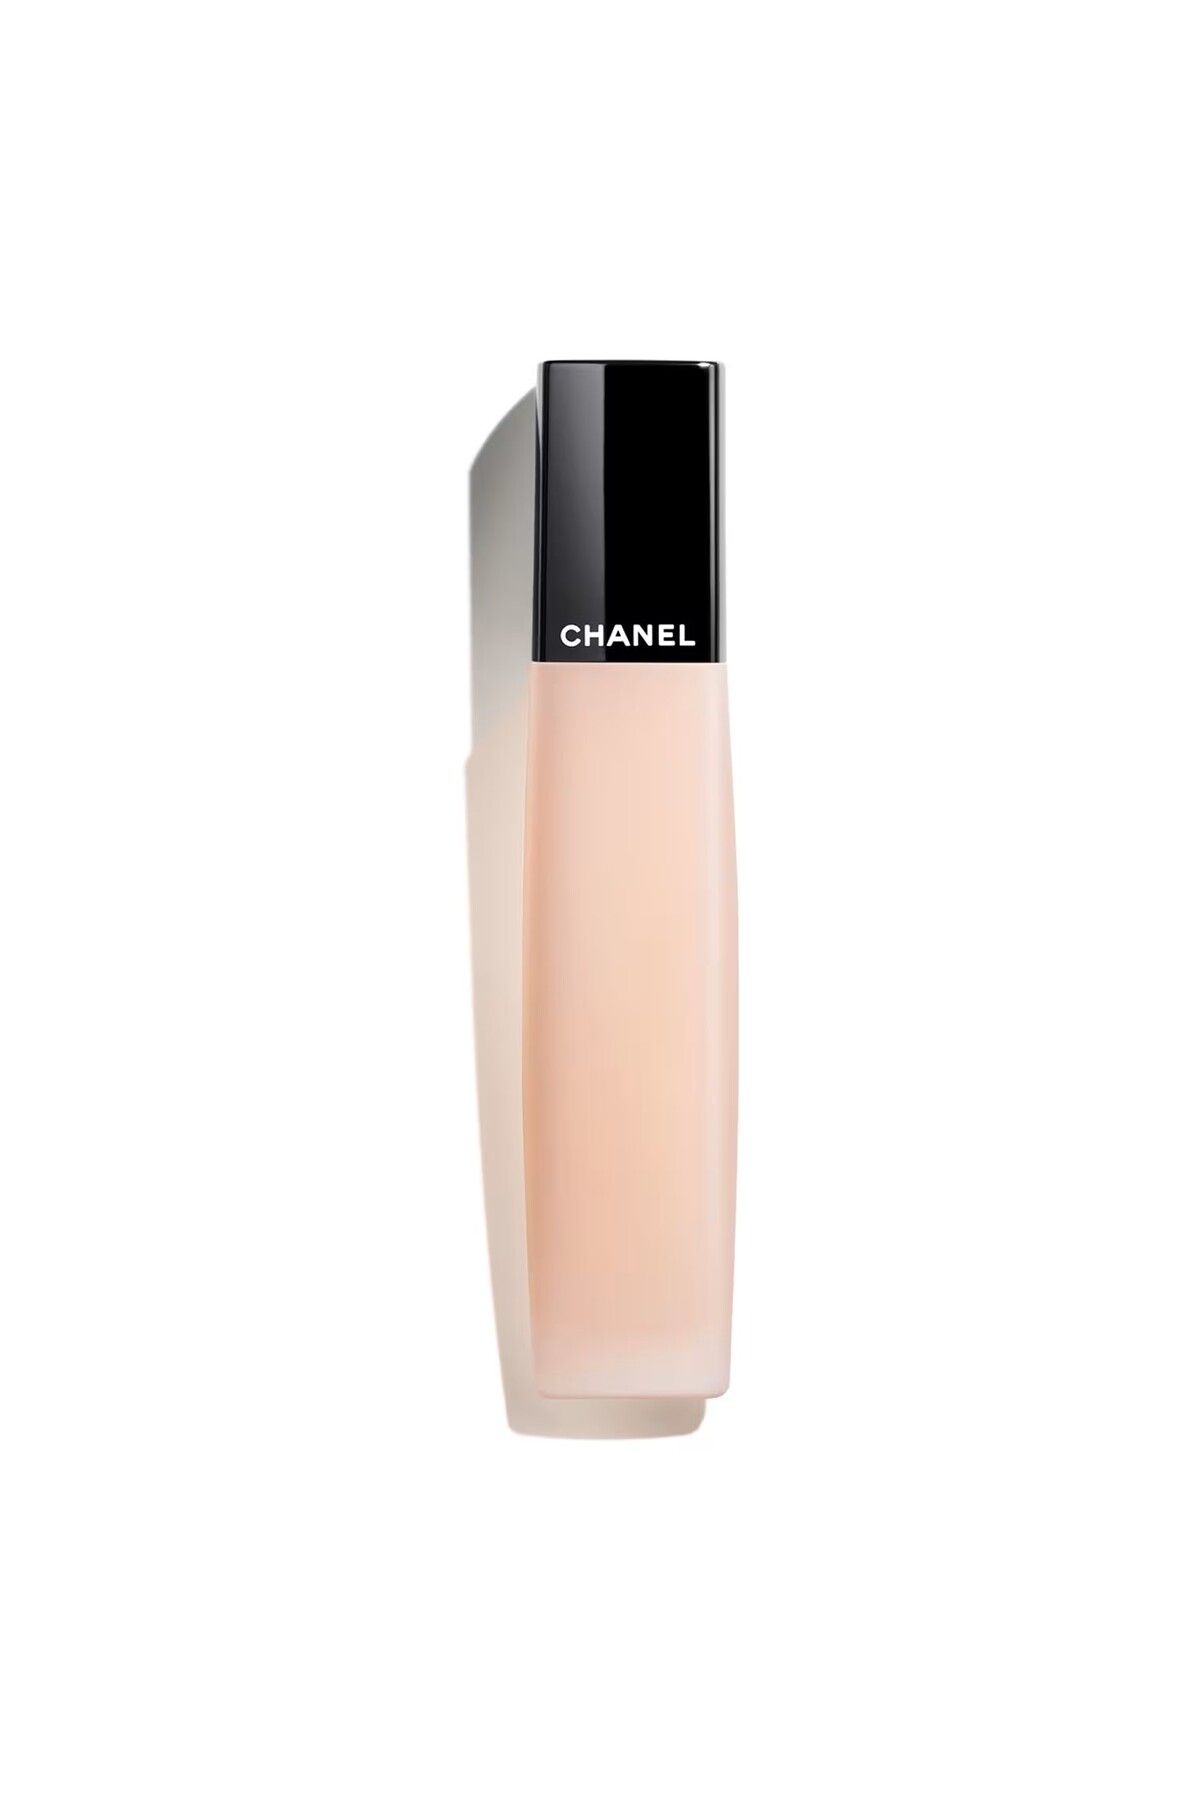 Chanel L'HUILE CAMÉLIA - Parlak Görünümlü Kusur Azaltıcı Besleyici Güçlendirici Tırnak Bakım Yağı